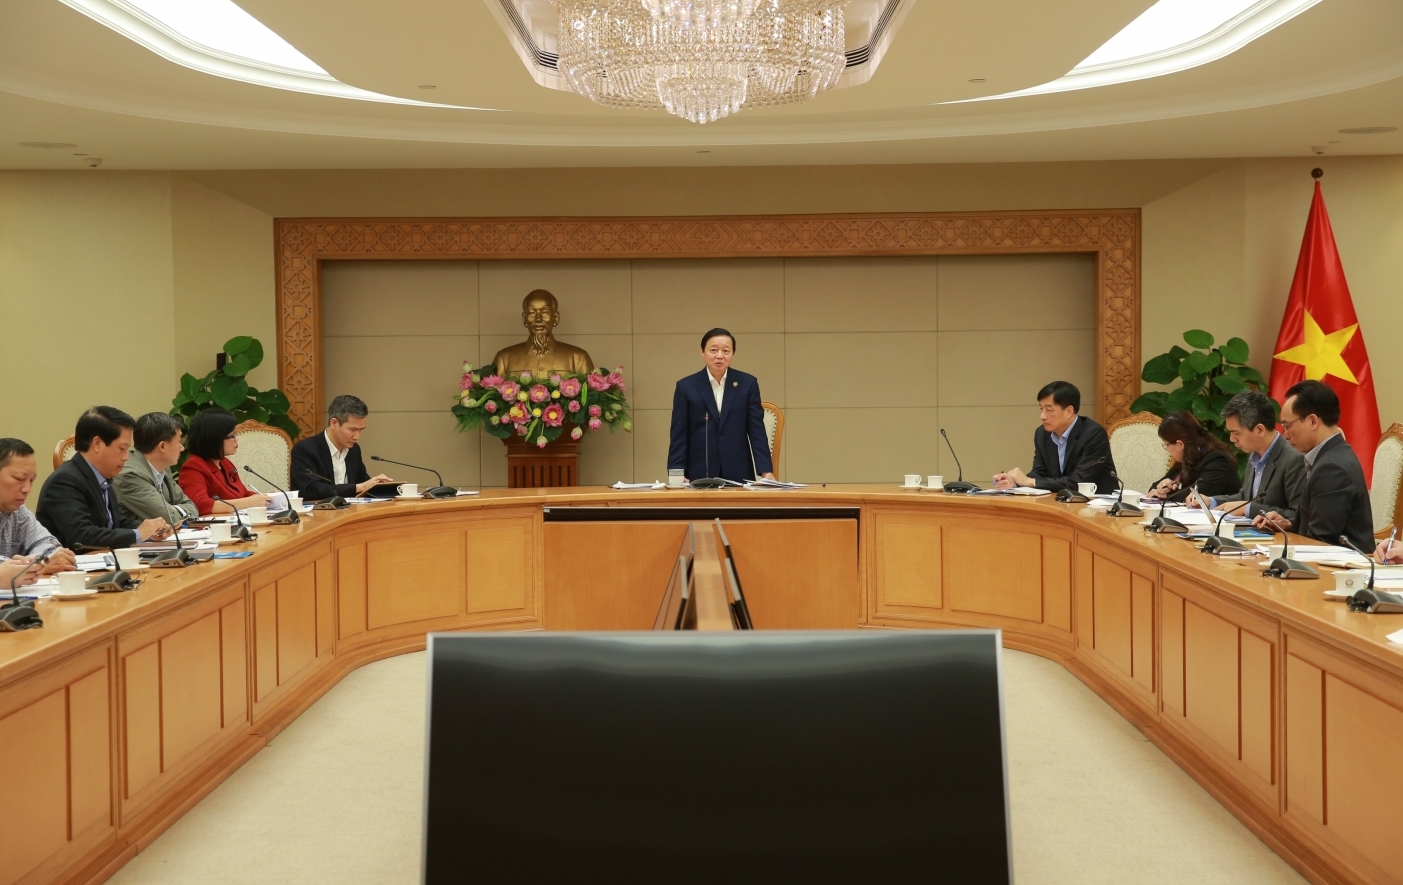 Phó Thủ tướng Trần Hồng Hà chủ trì cuộc họp chấn chỉnh việc bỏ sổ hộ khẩu